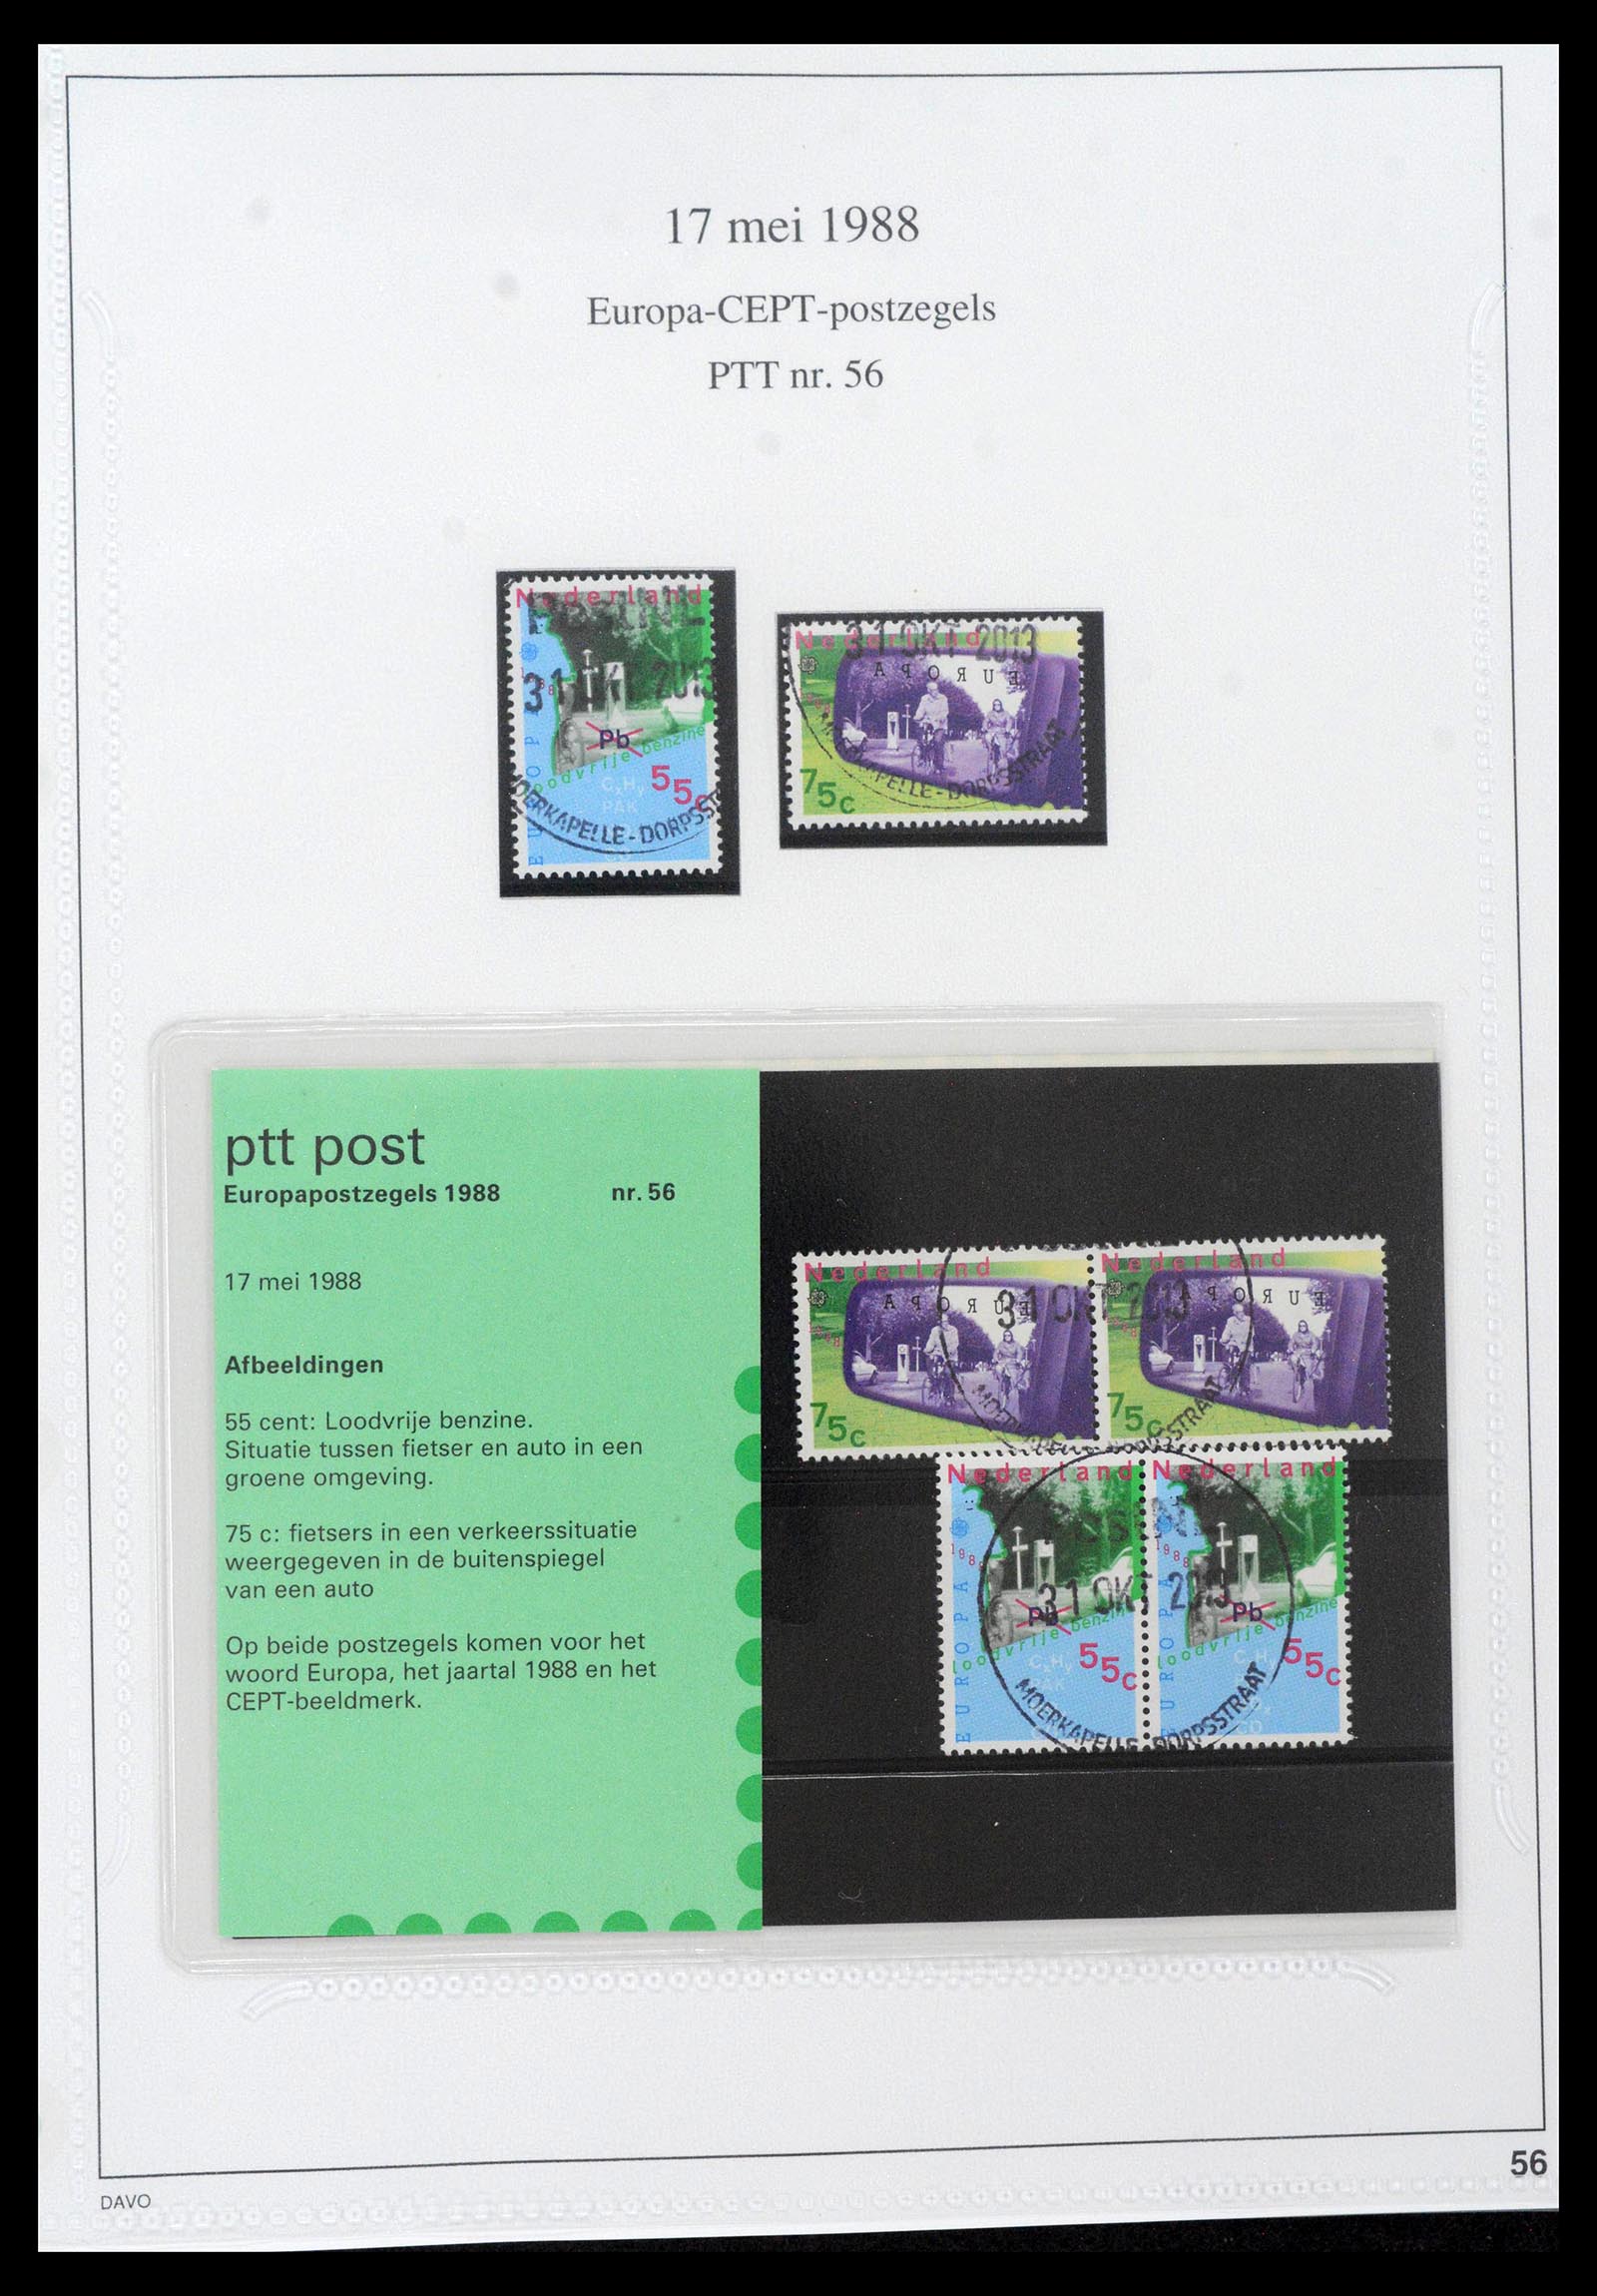 39121 0056 - Stamp collection 39121 Netherlands presentationpacks 1982-2001.